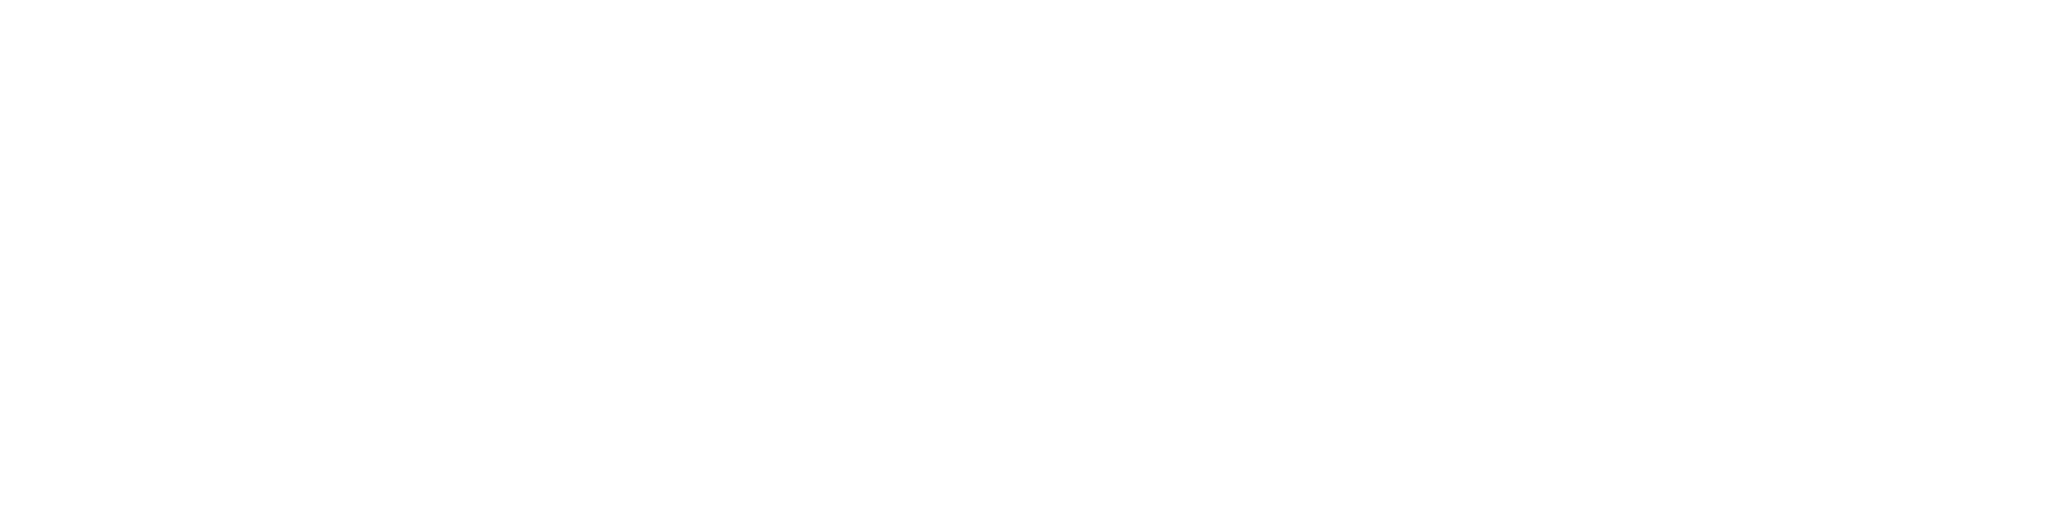 makersXchange